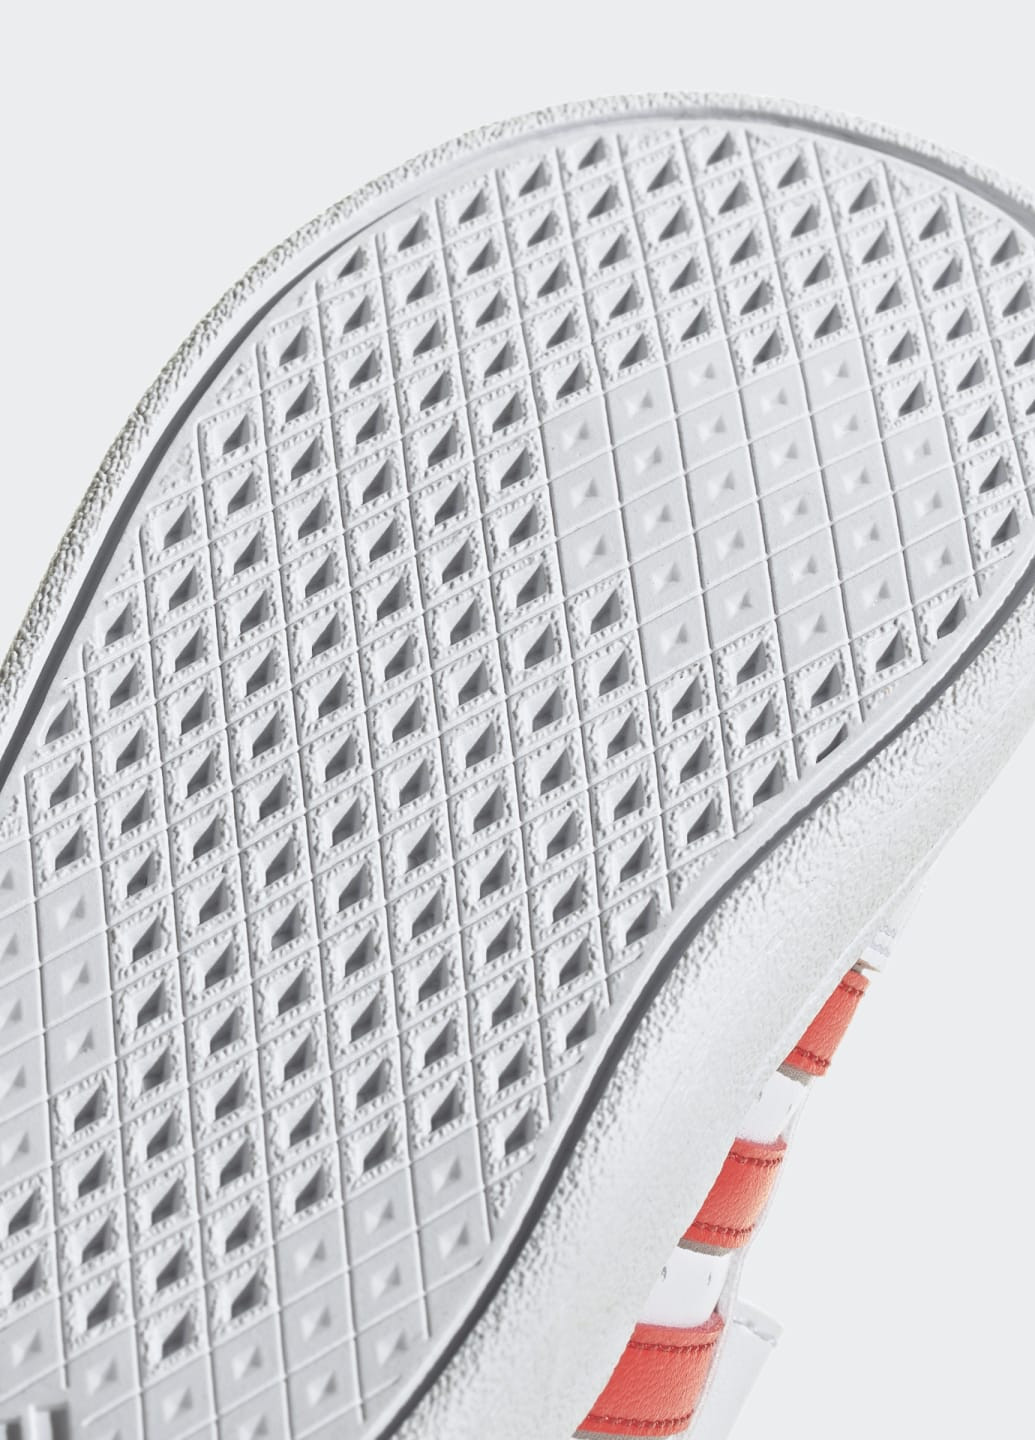 Білі всесезонні кросівки breaknet lifestyle court adidas